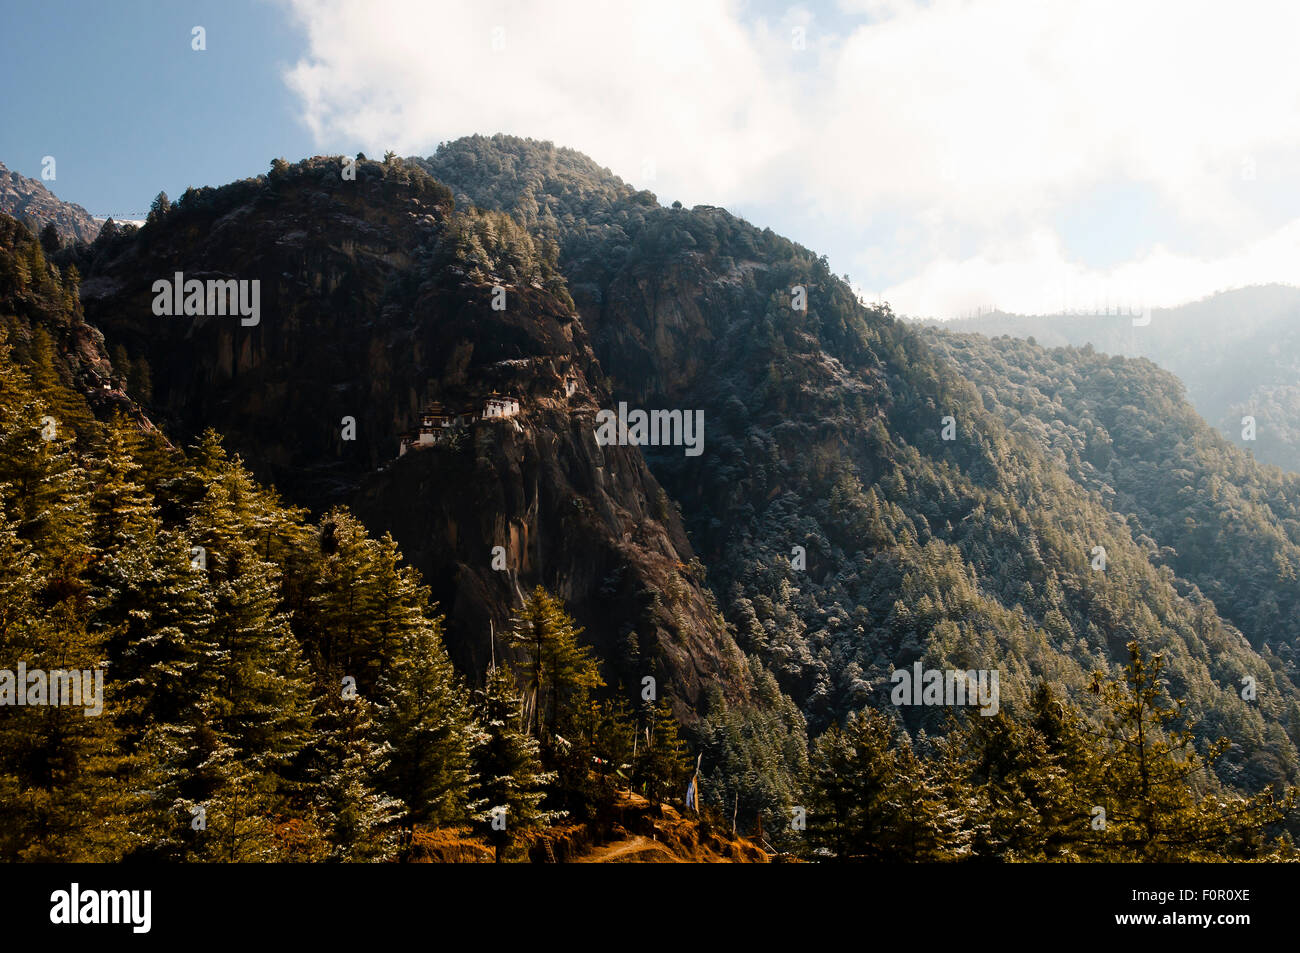 Cliff of Taktsang Monastery (Tiger's Nest) - Bhutan Stock Photo